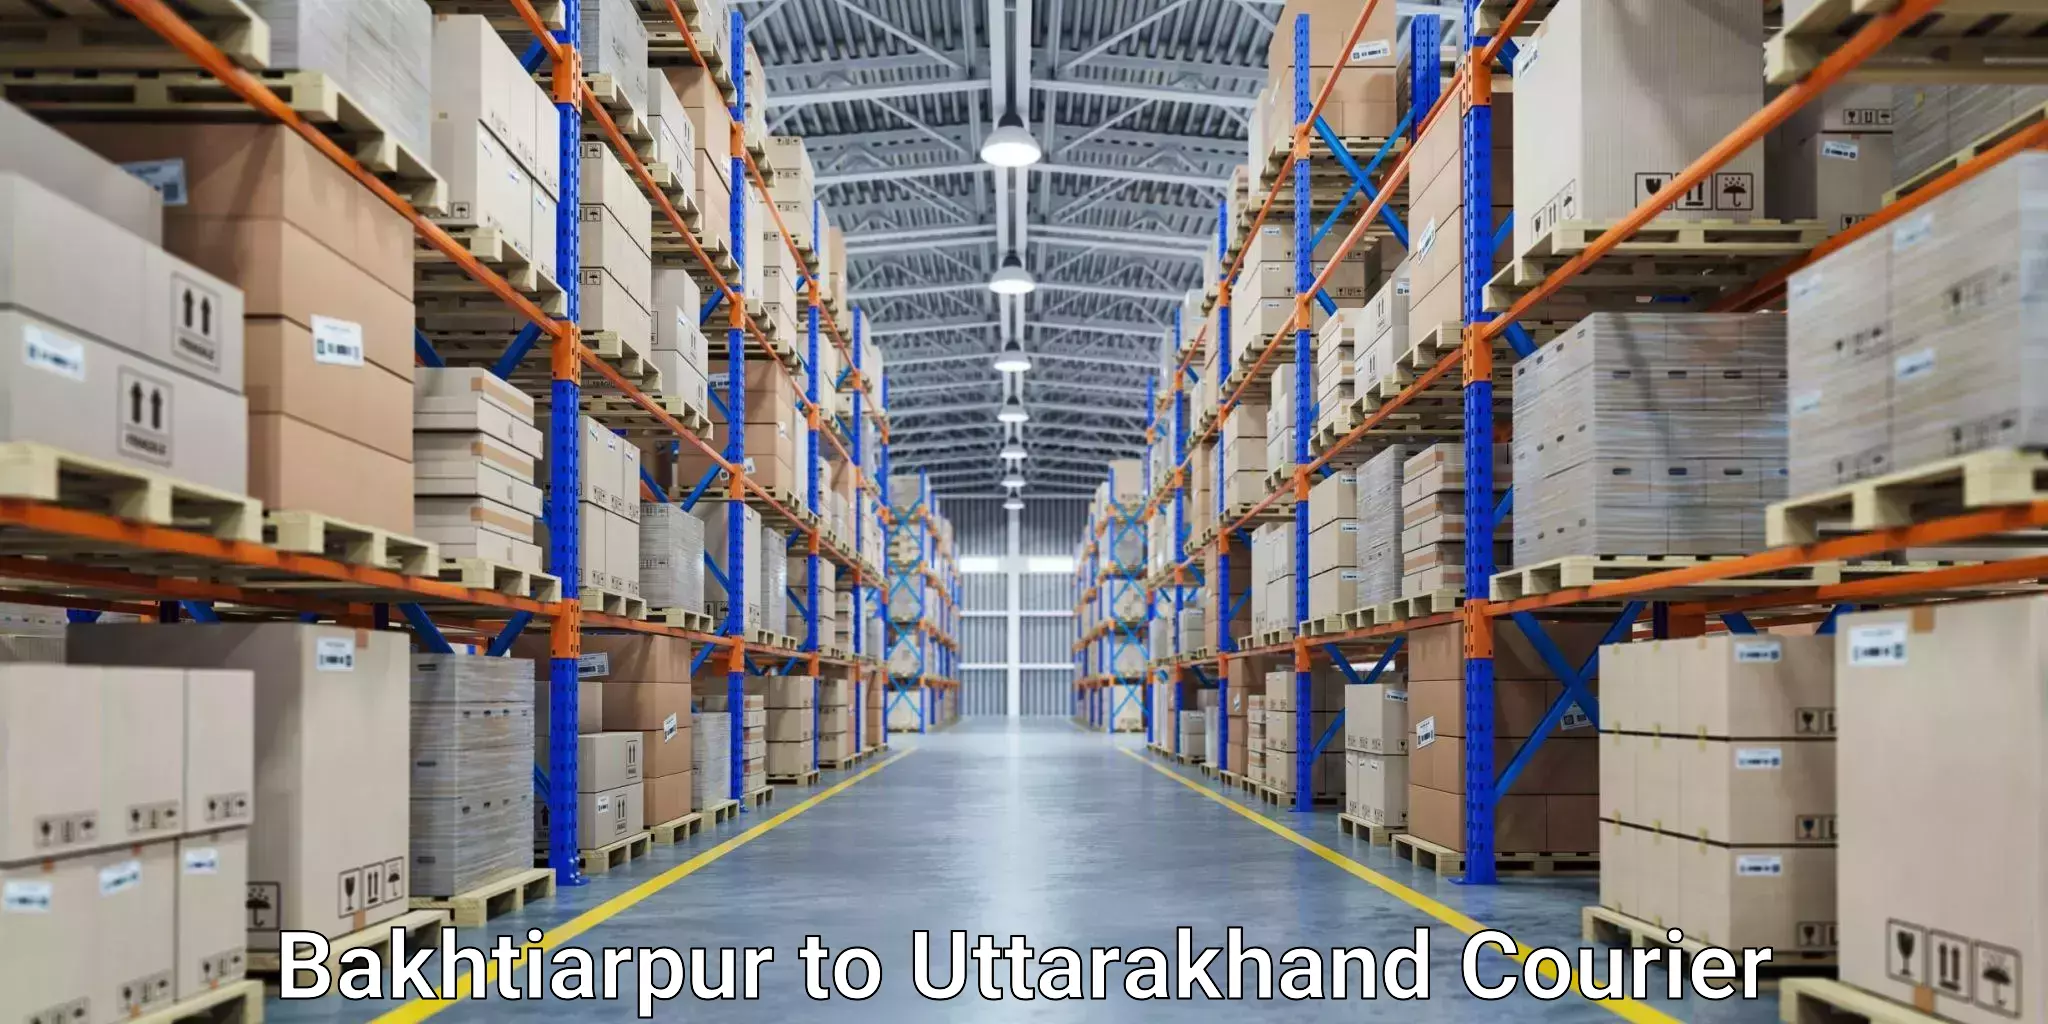 On-demand courier Bakhtiarpur to Uttarakhand